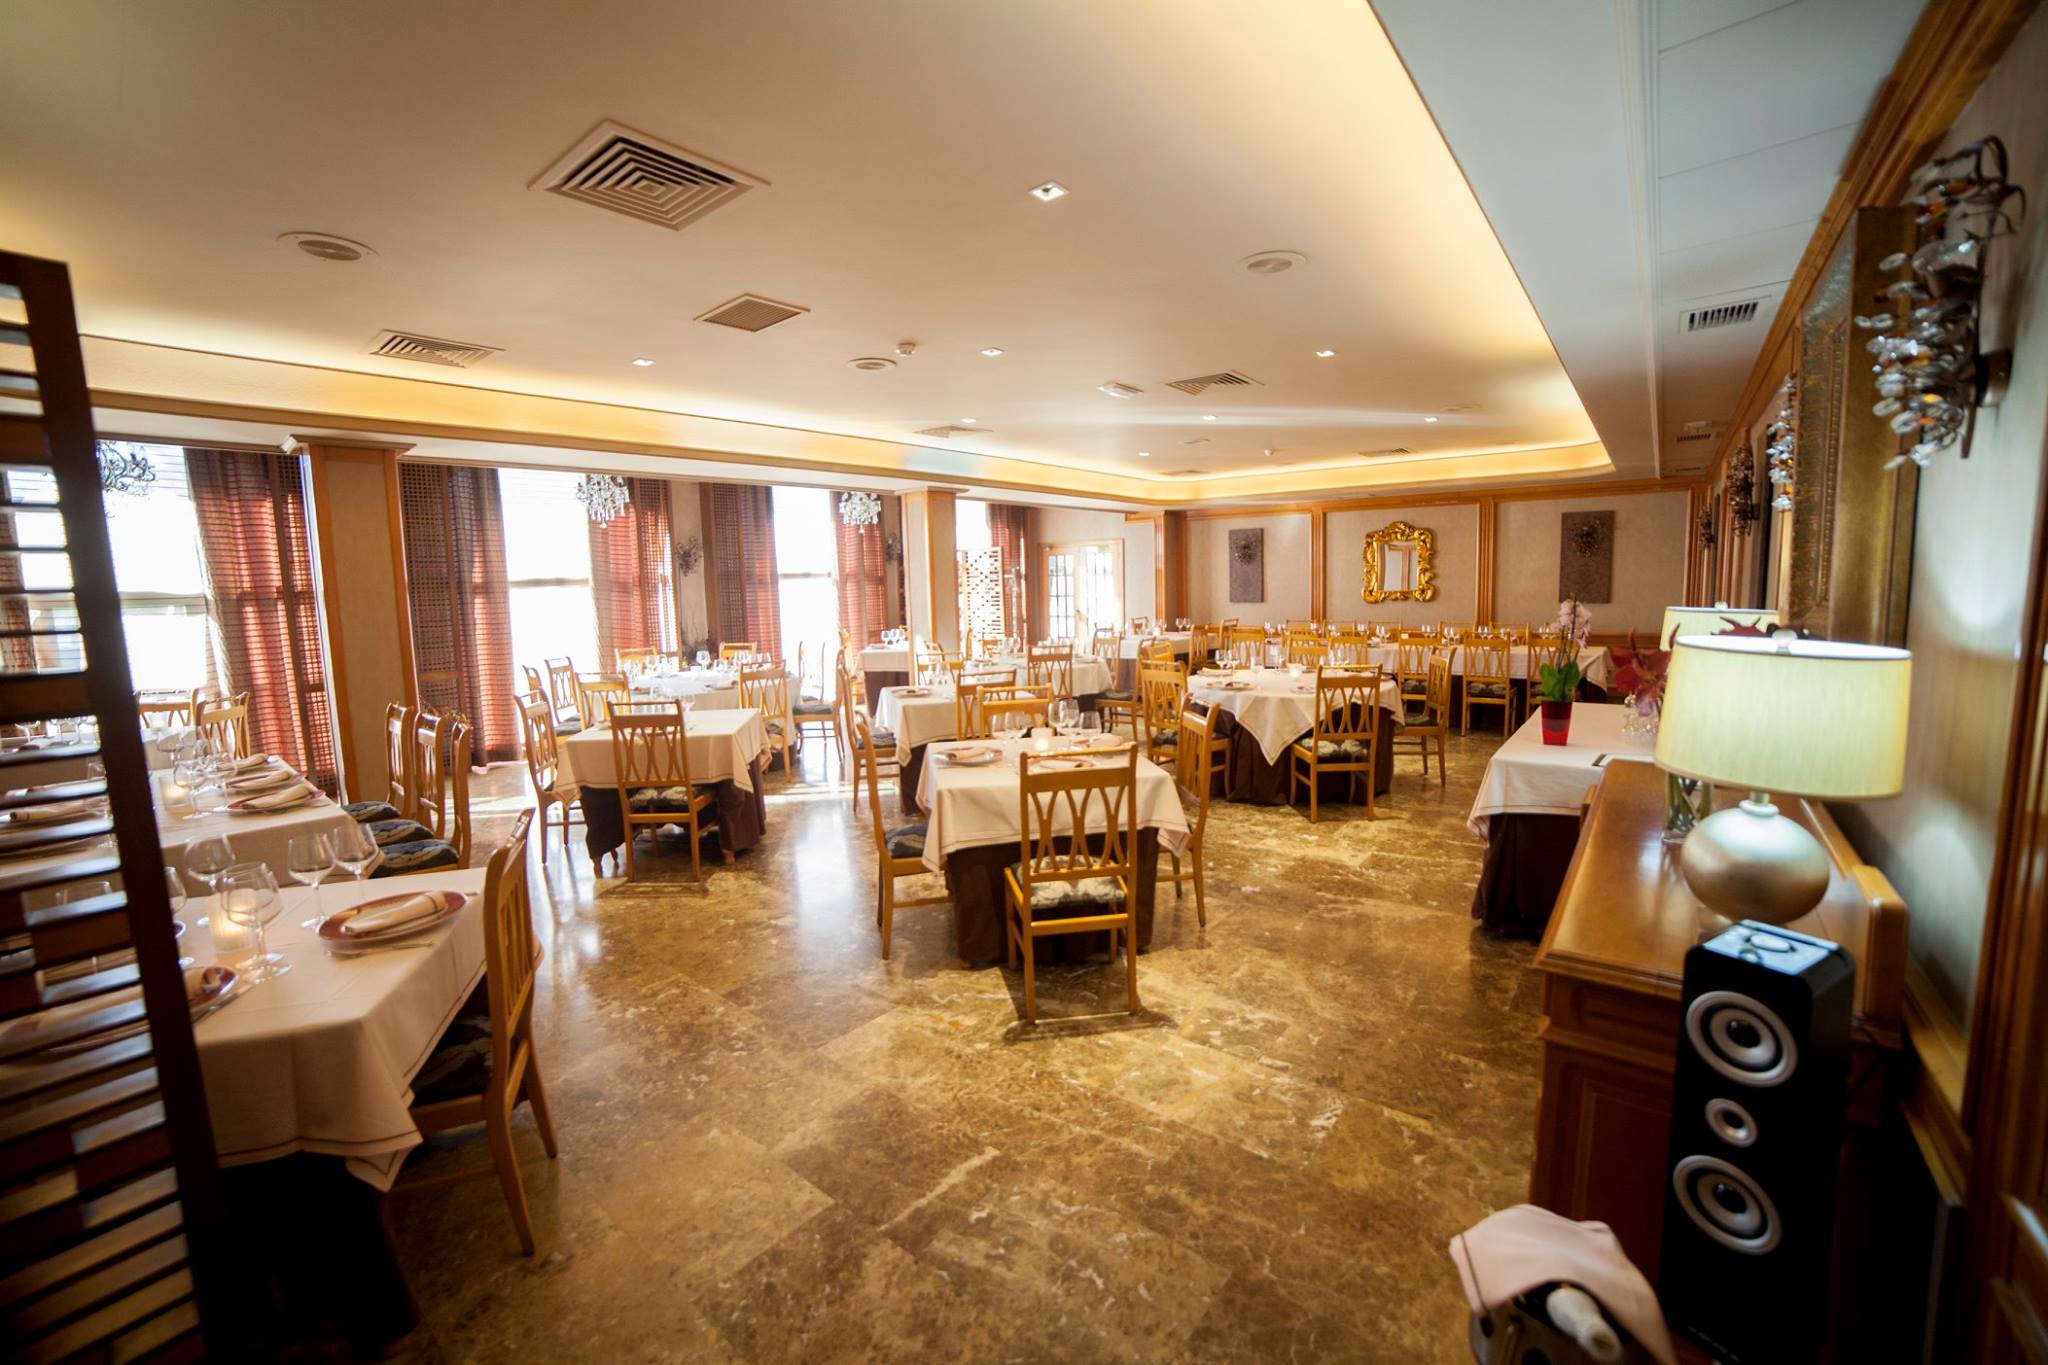 Restaurante del Hotel Castilla de Torrijos, con platos de cocina local y con salones para reuniones de trabajo y otras celebraciones.       